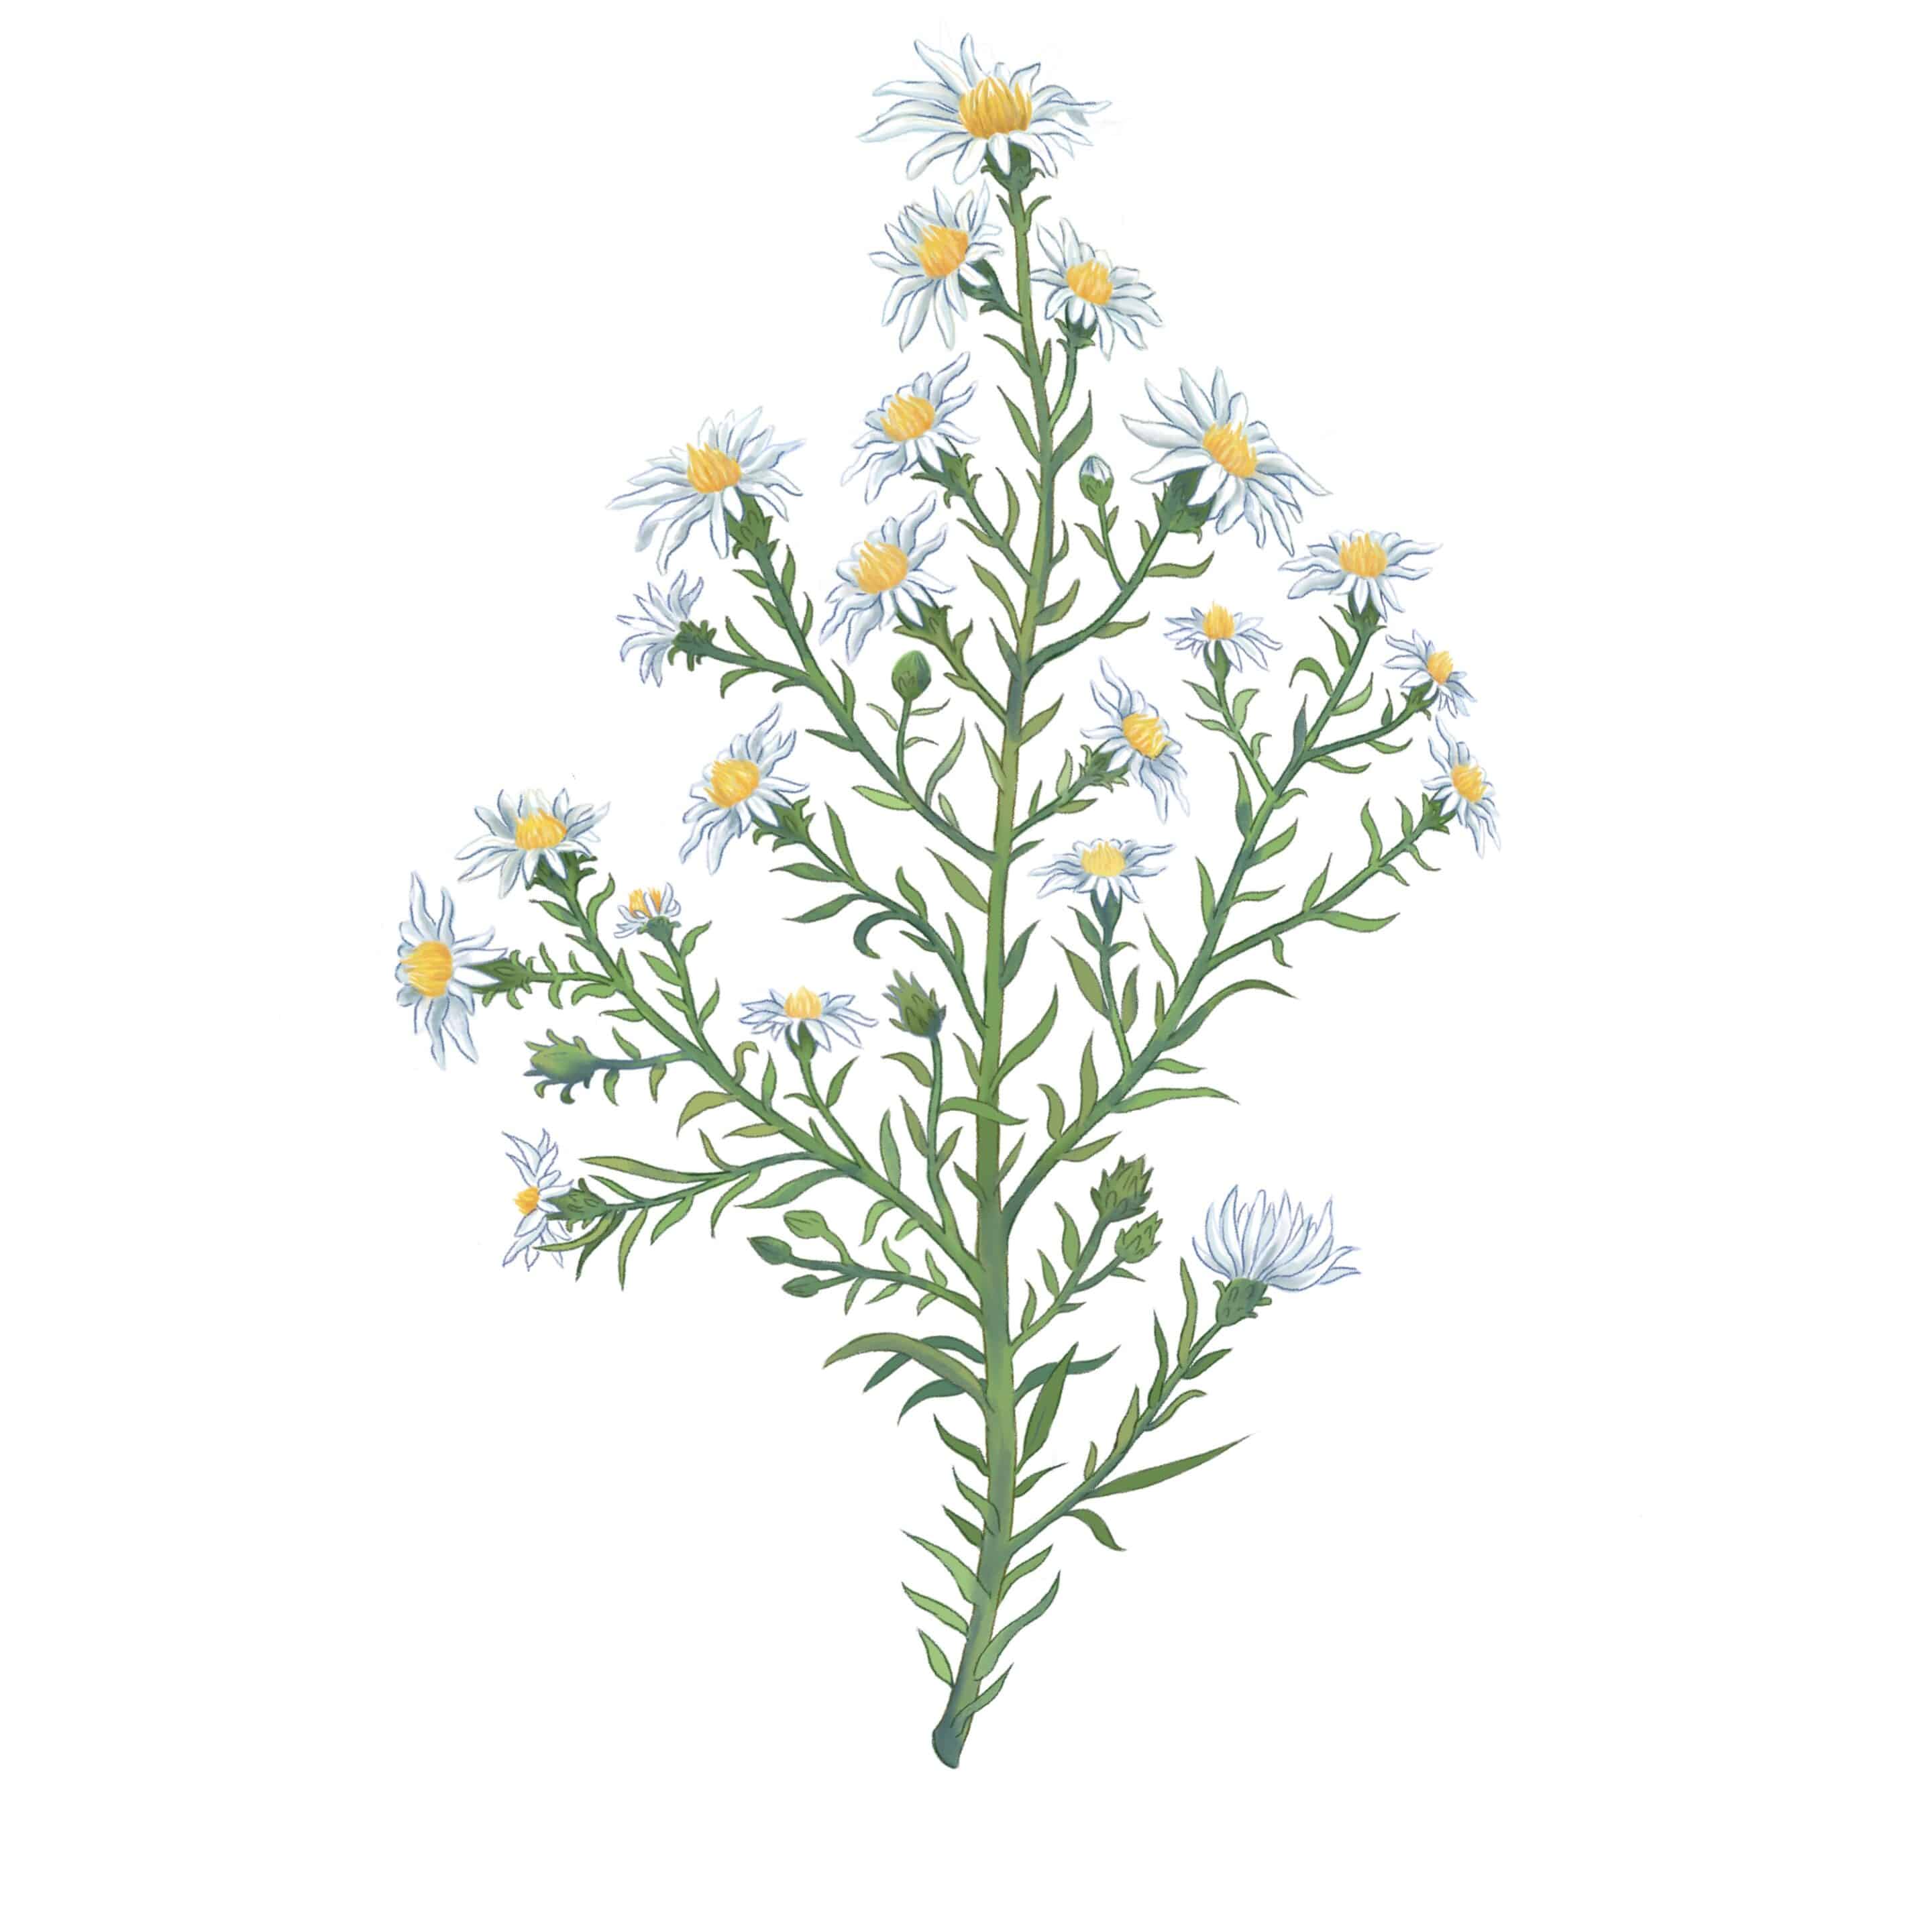 White Heath Aster, Symphyotrichum cordifolium